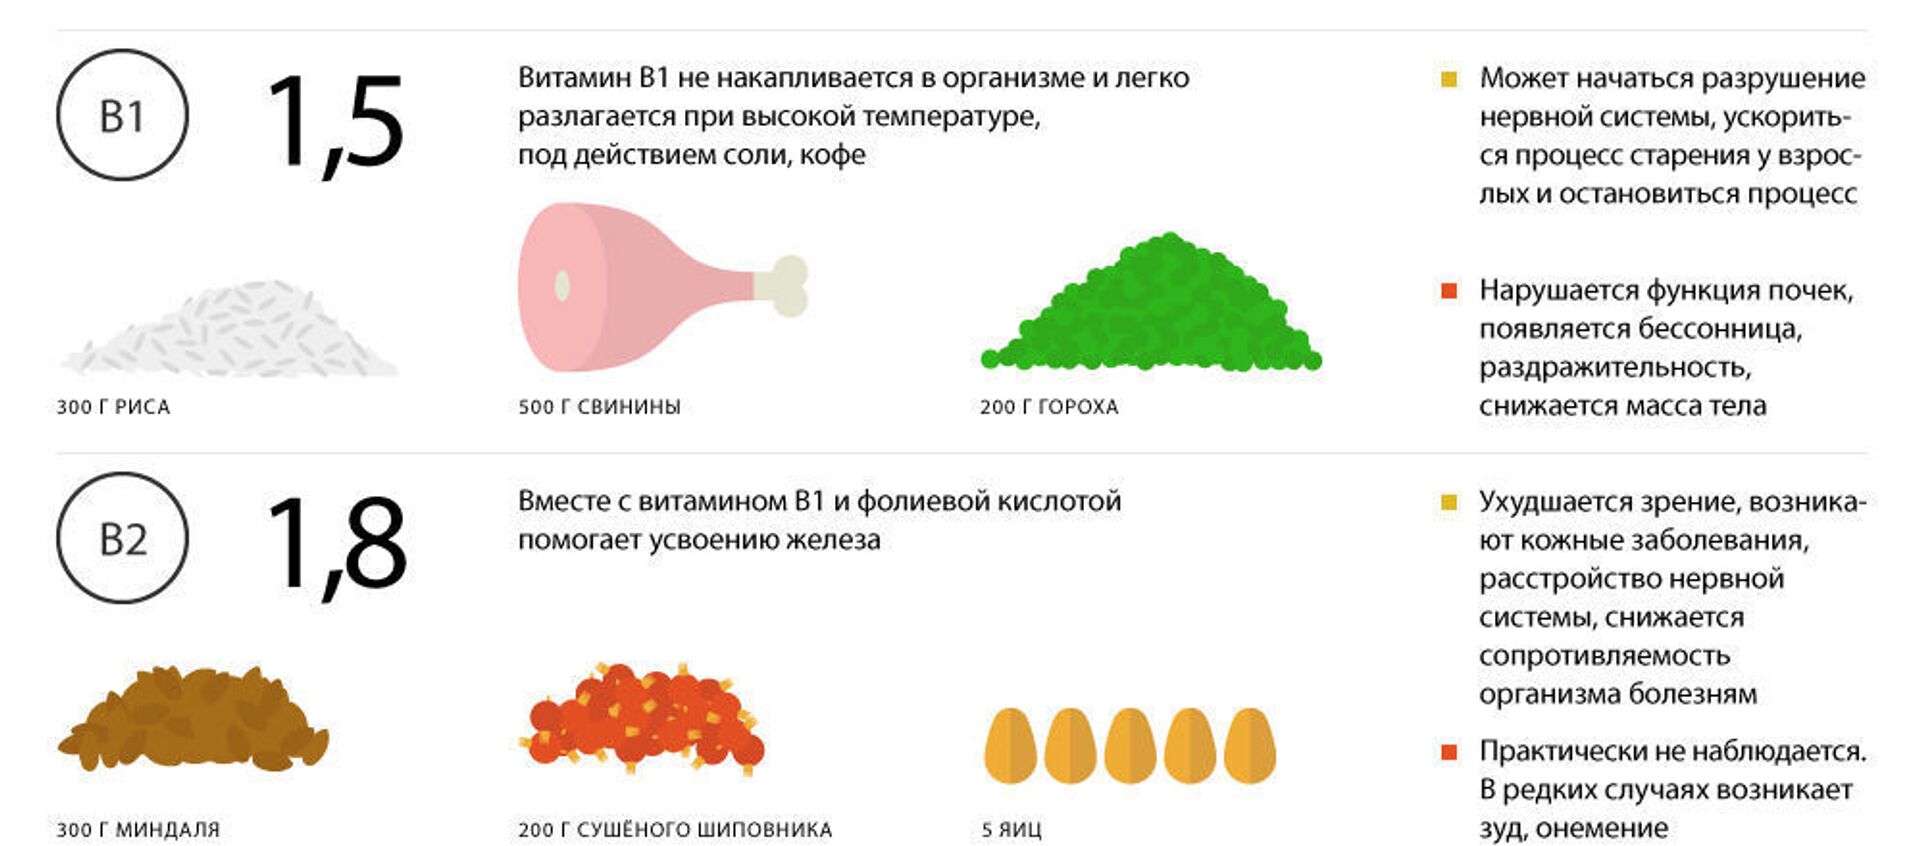 Что нужно знать о витаминах - Sputnik Узбекистан, 1920, 03.03.2019